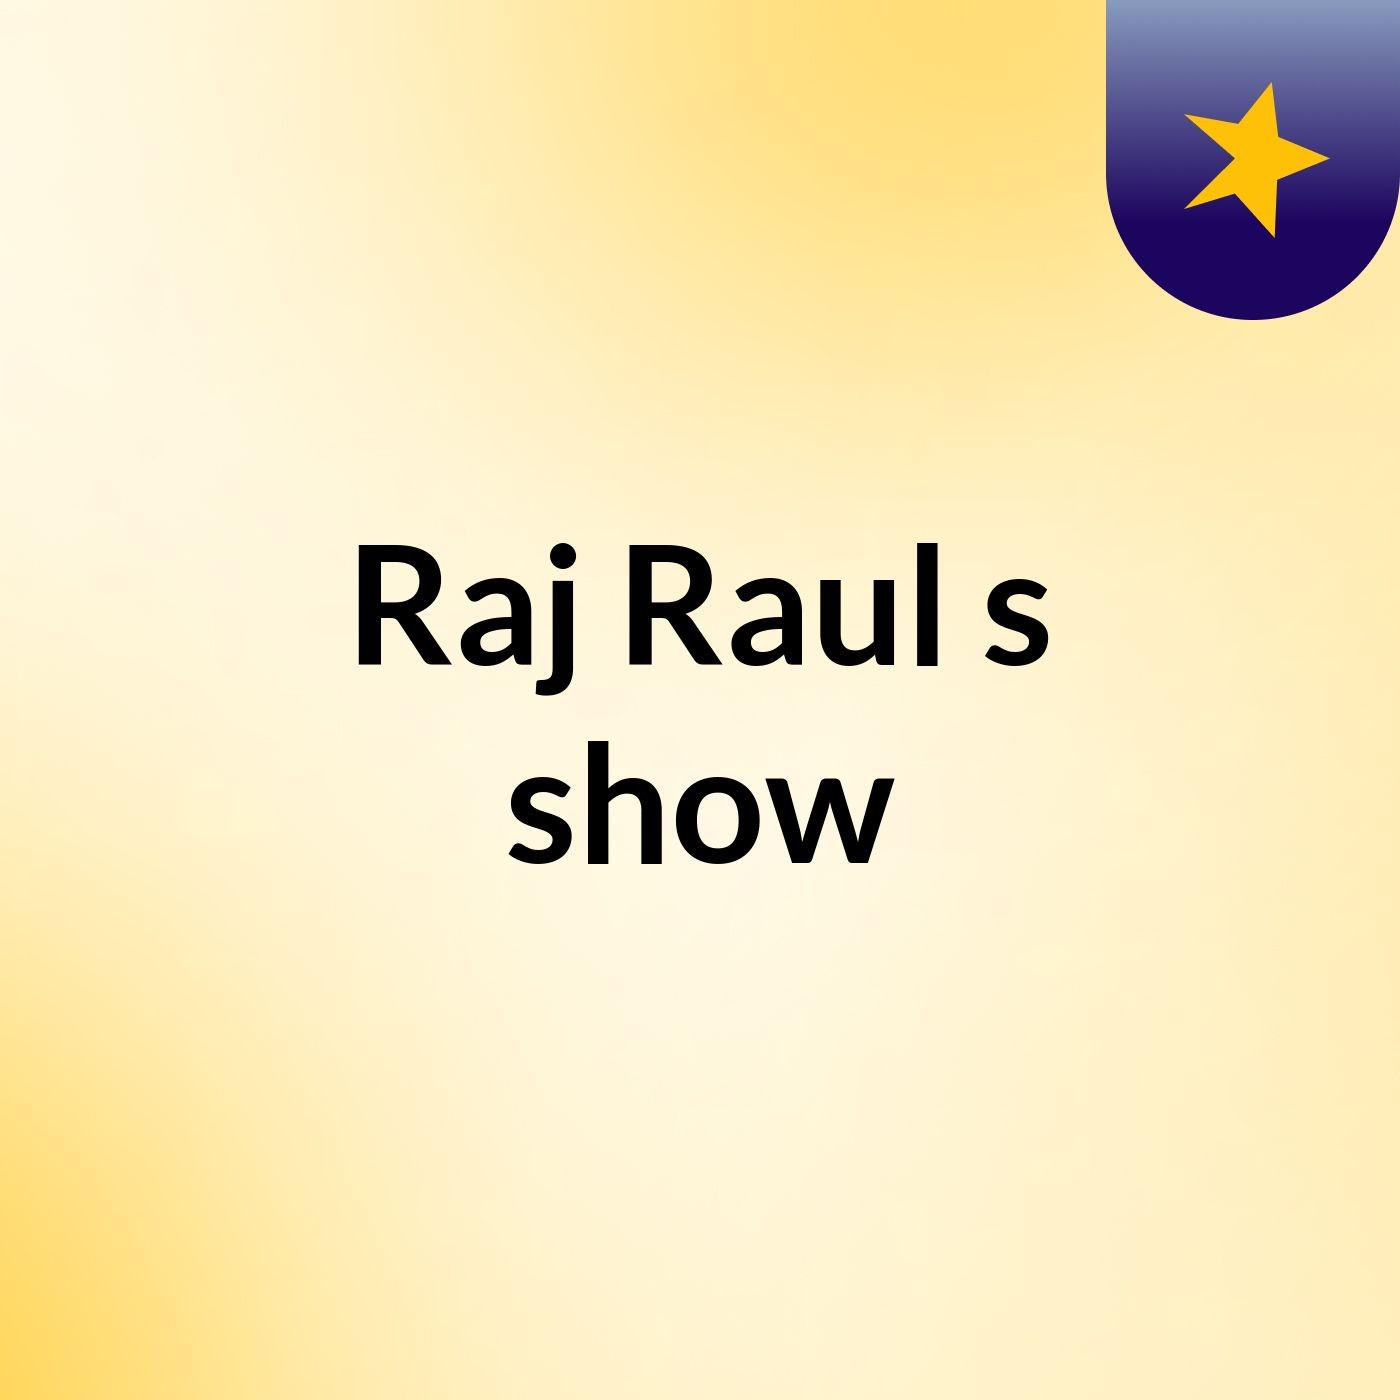 Raj Raul's show